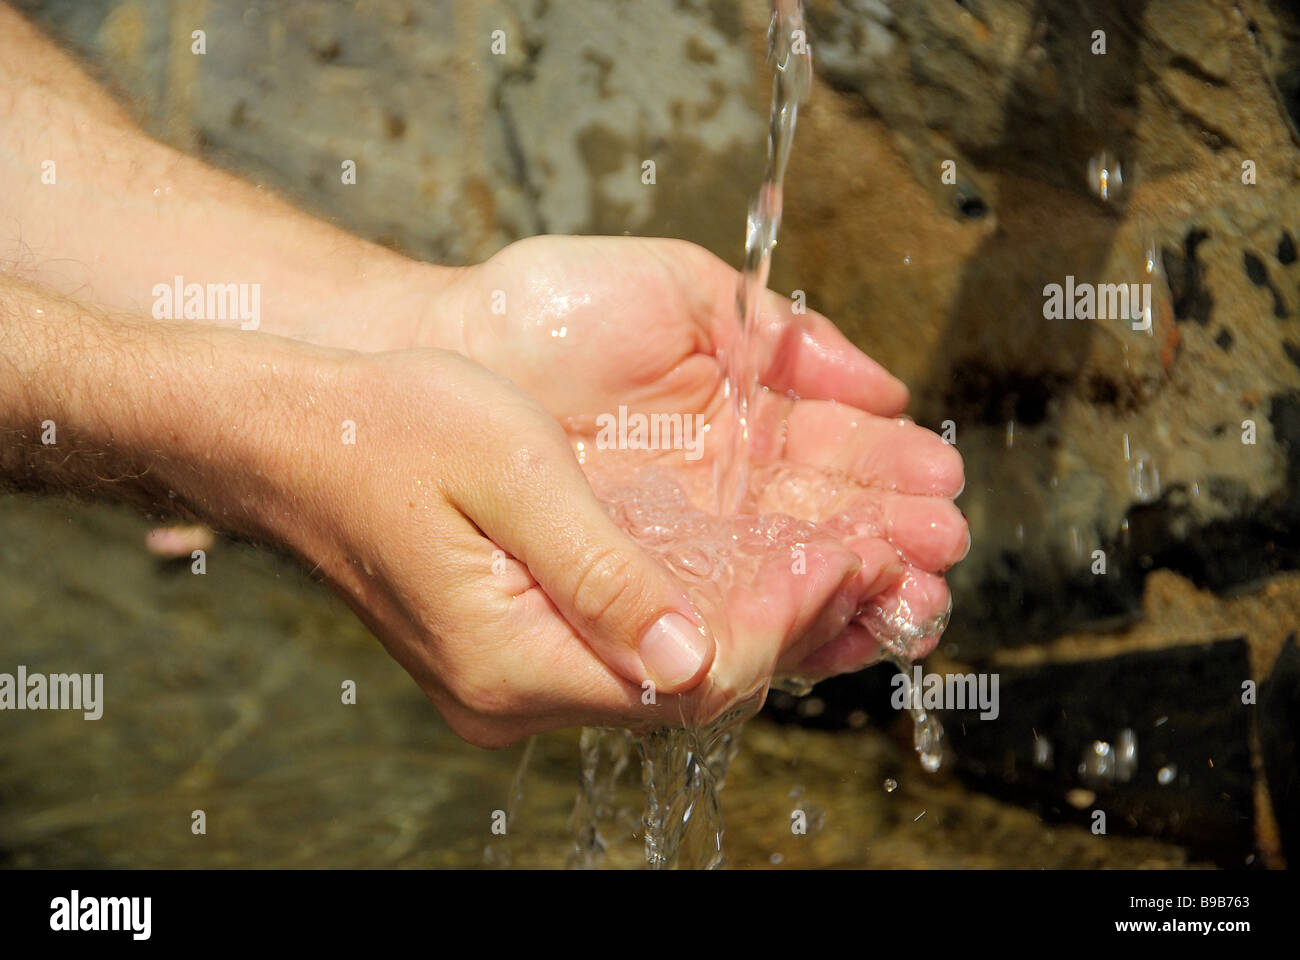 Hände waschen washing hands 07 Stock Photo